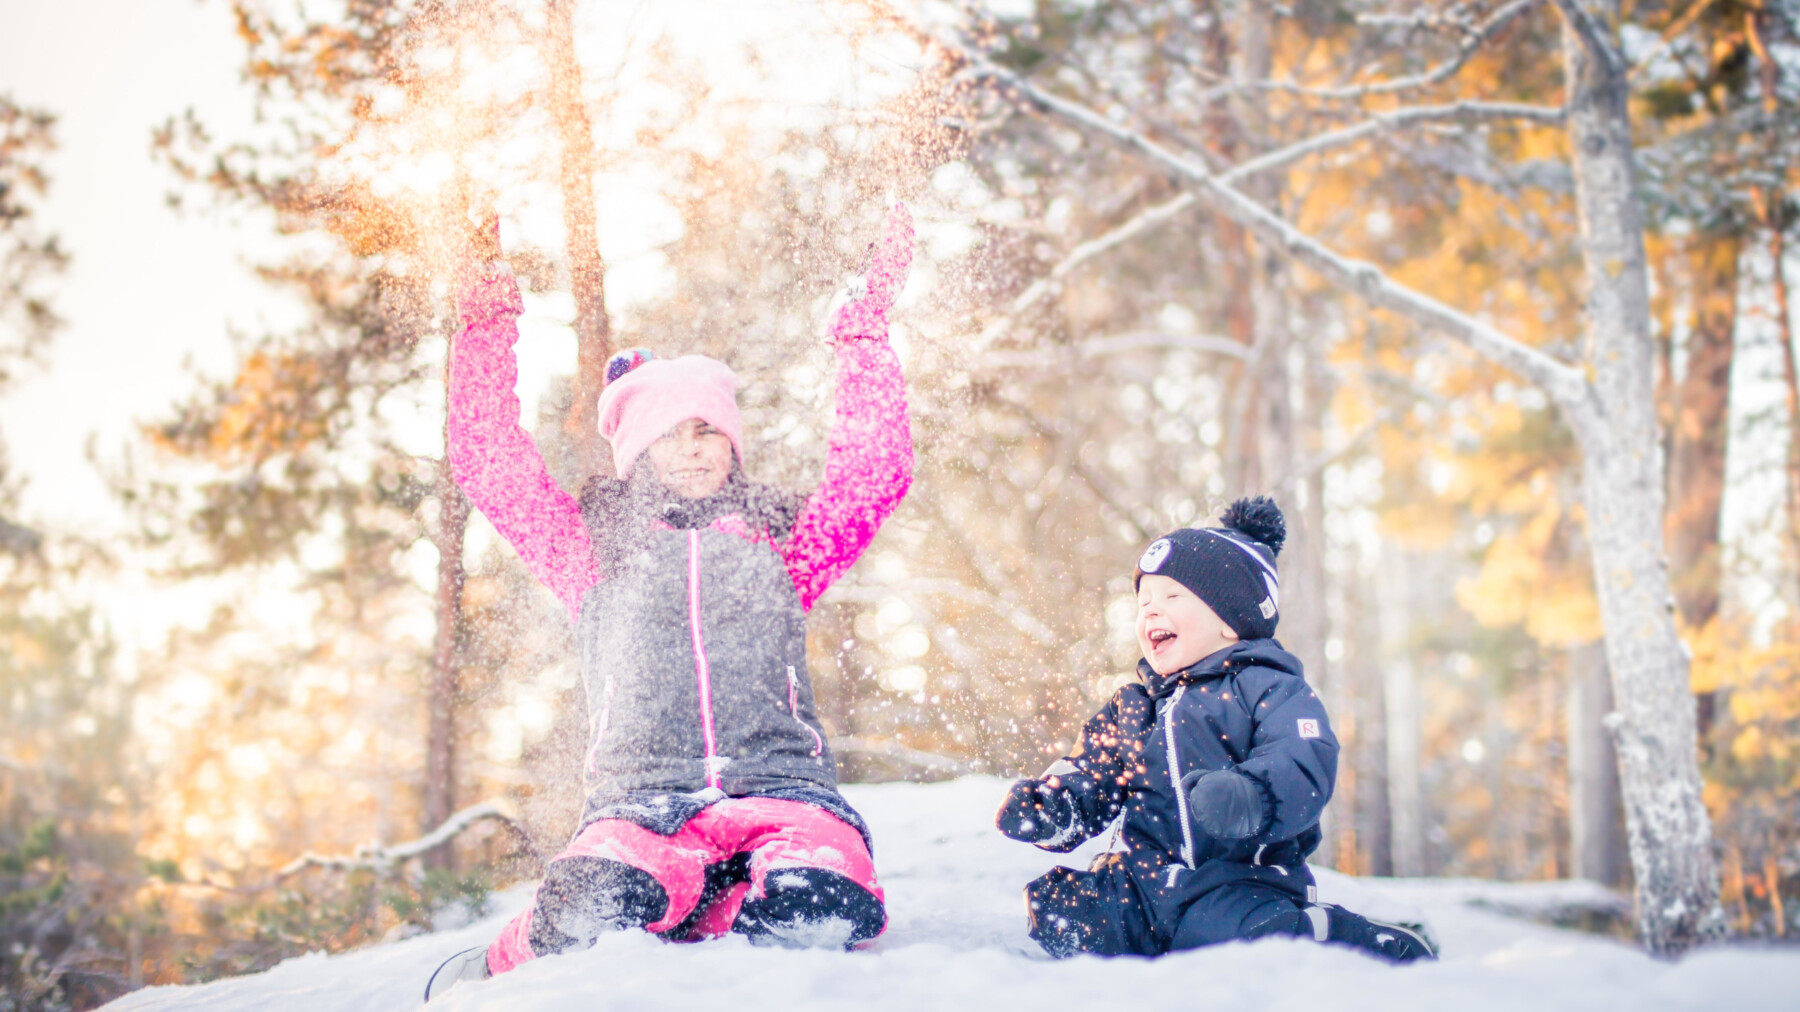 Zwei kleine Kinder werfen vor mehreren Bäumen Schnee in die Luft und lachen.